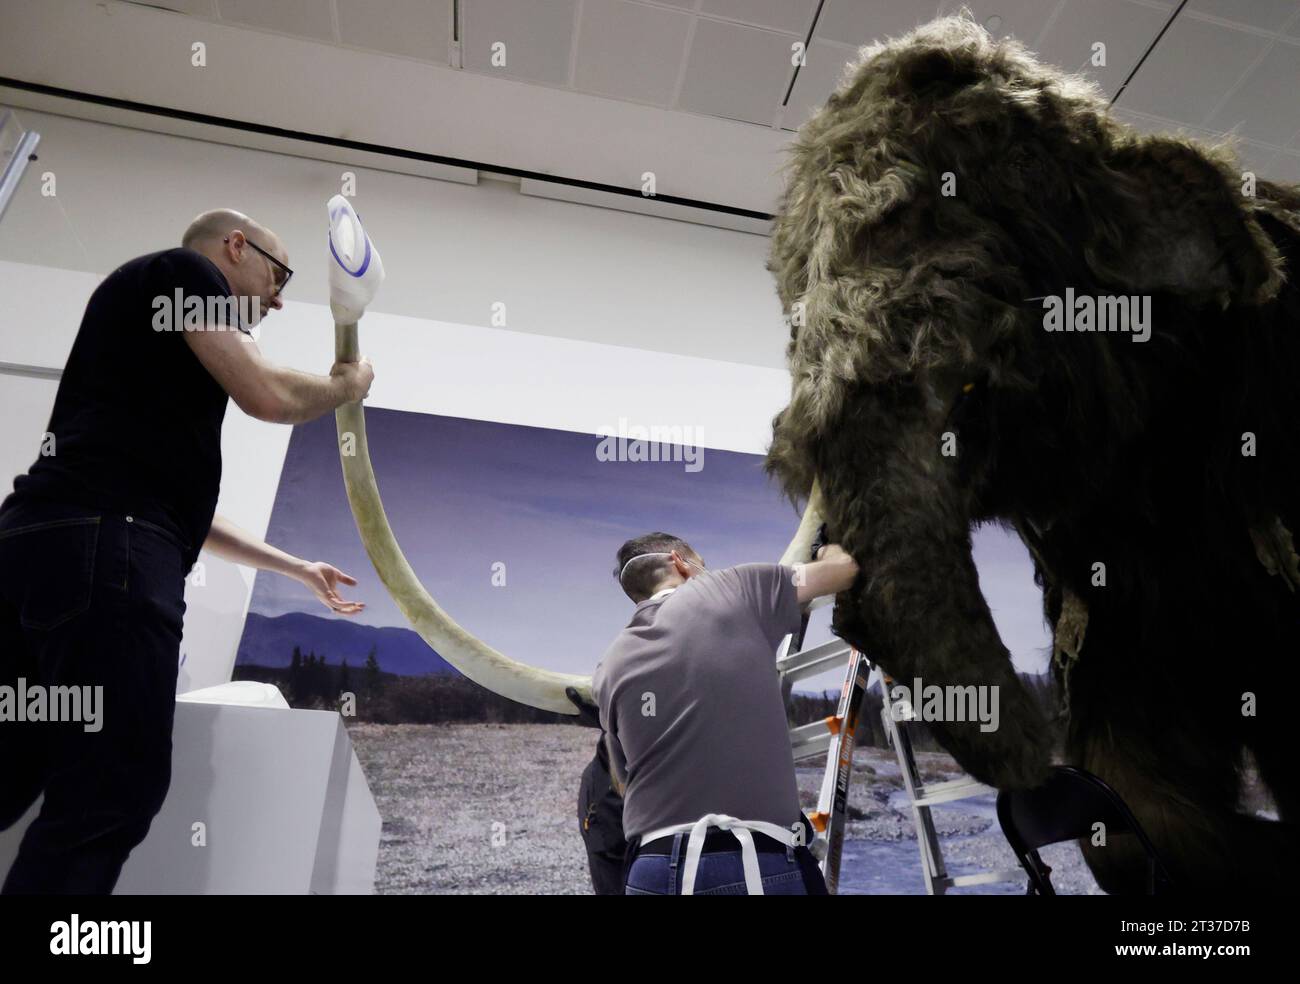 New York, Stati Uniti. 3 gennaio 2023. I lavoratori assemblano la testa, le zanne e altri ultimi aggiustamenti mentre completano l'installazione di un modello a grandezza naturale di un mammut lanoso, uno dei giganti dell'era glaciale, presso l'American Museum of Natural History di New York City lunedì 23 ottobre 2023. Il Mammoth lanoso a grandezza naturale arriva a New York come parte della nuova mostra, The Secret World of Elephants, che aprirà il 13 novembre. Foto di John Angelillo/UPI Credit: UPI/Alamy Live News Foto Stock